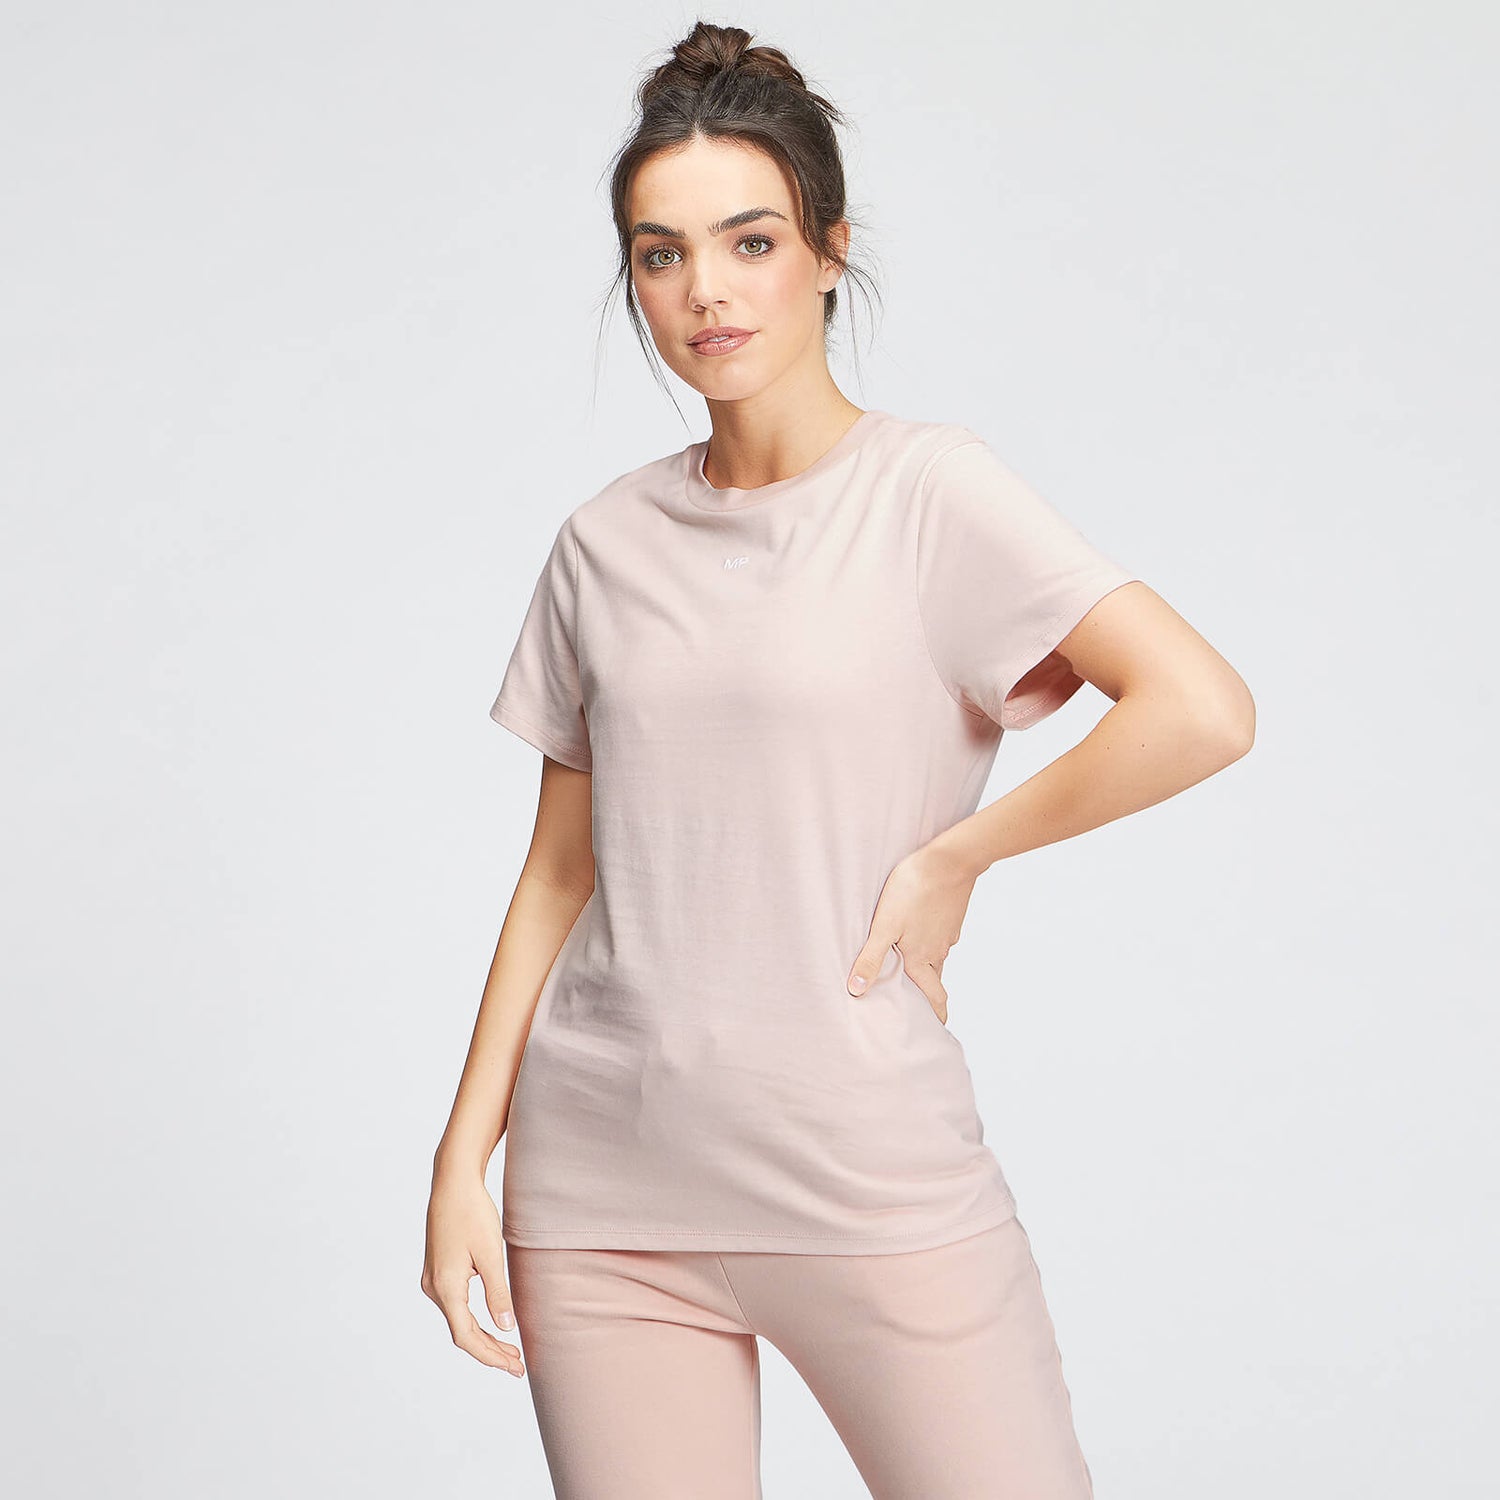 Женская футболка MP Essentials T-Shirt - светло-розовая - XS